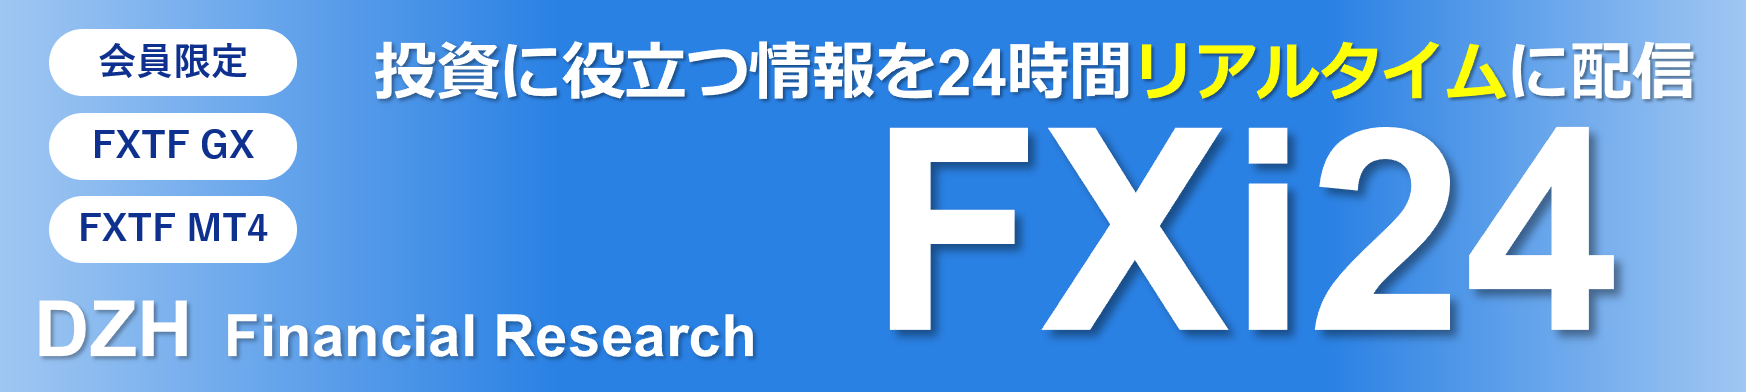 金融情報サービス「FXi24」